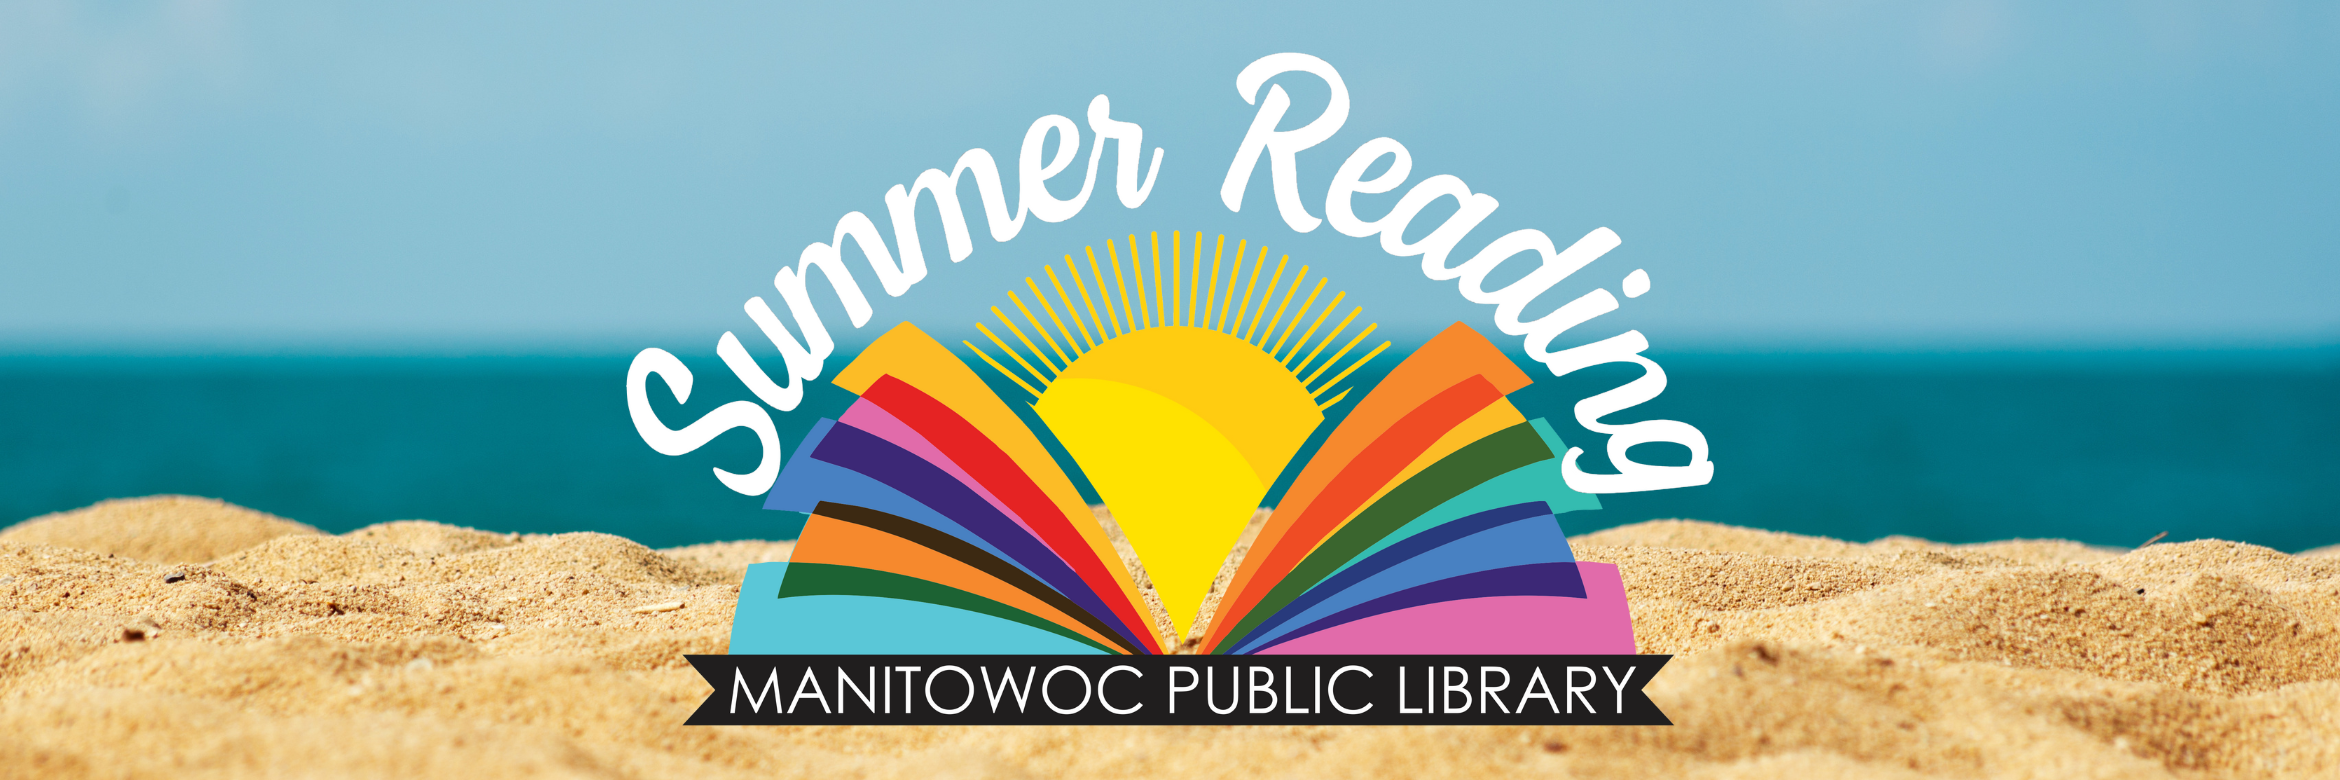 Summer reading program banner